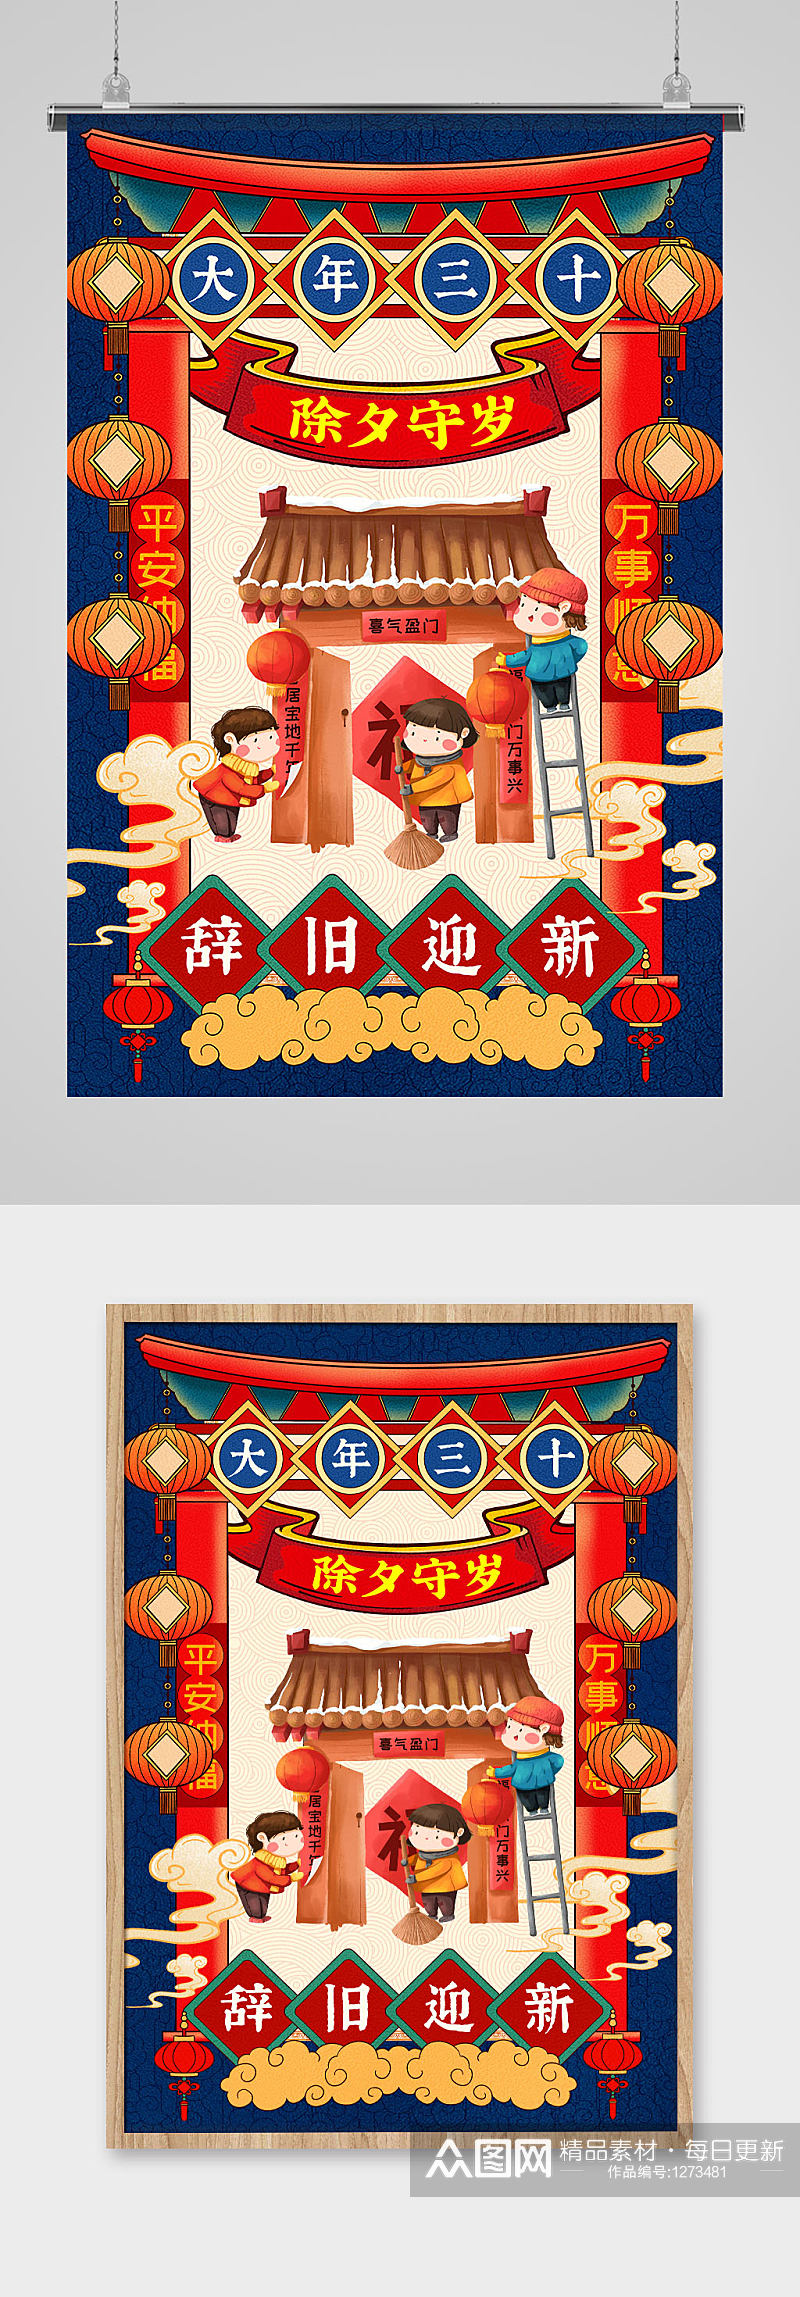 中国传统民俗插画风之除夕守岁海报素材